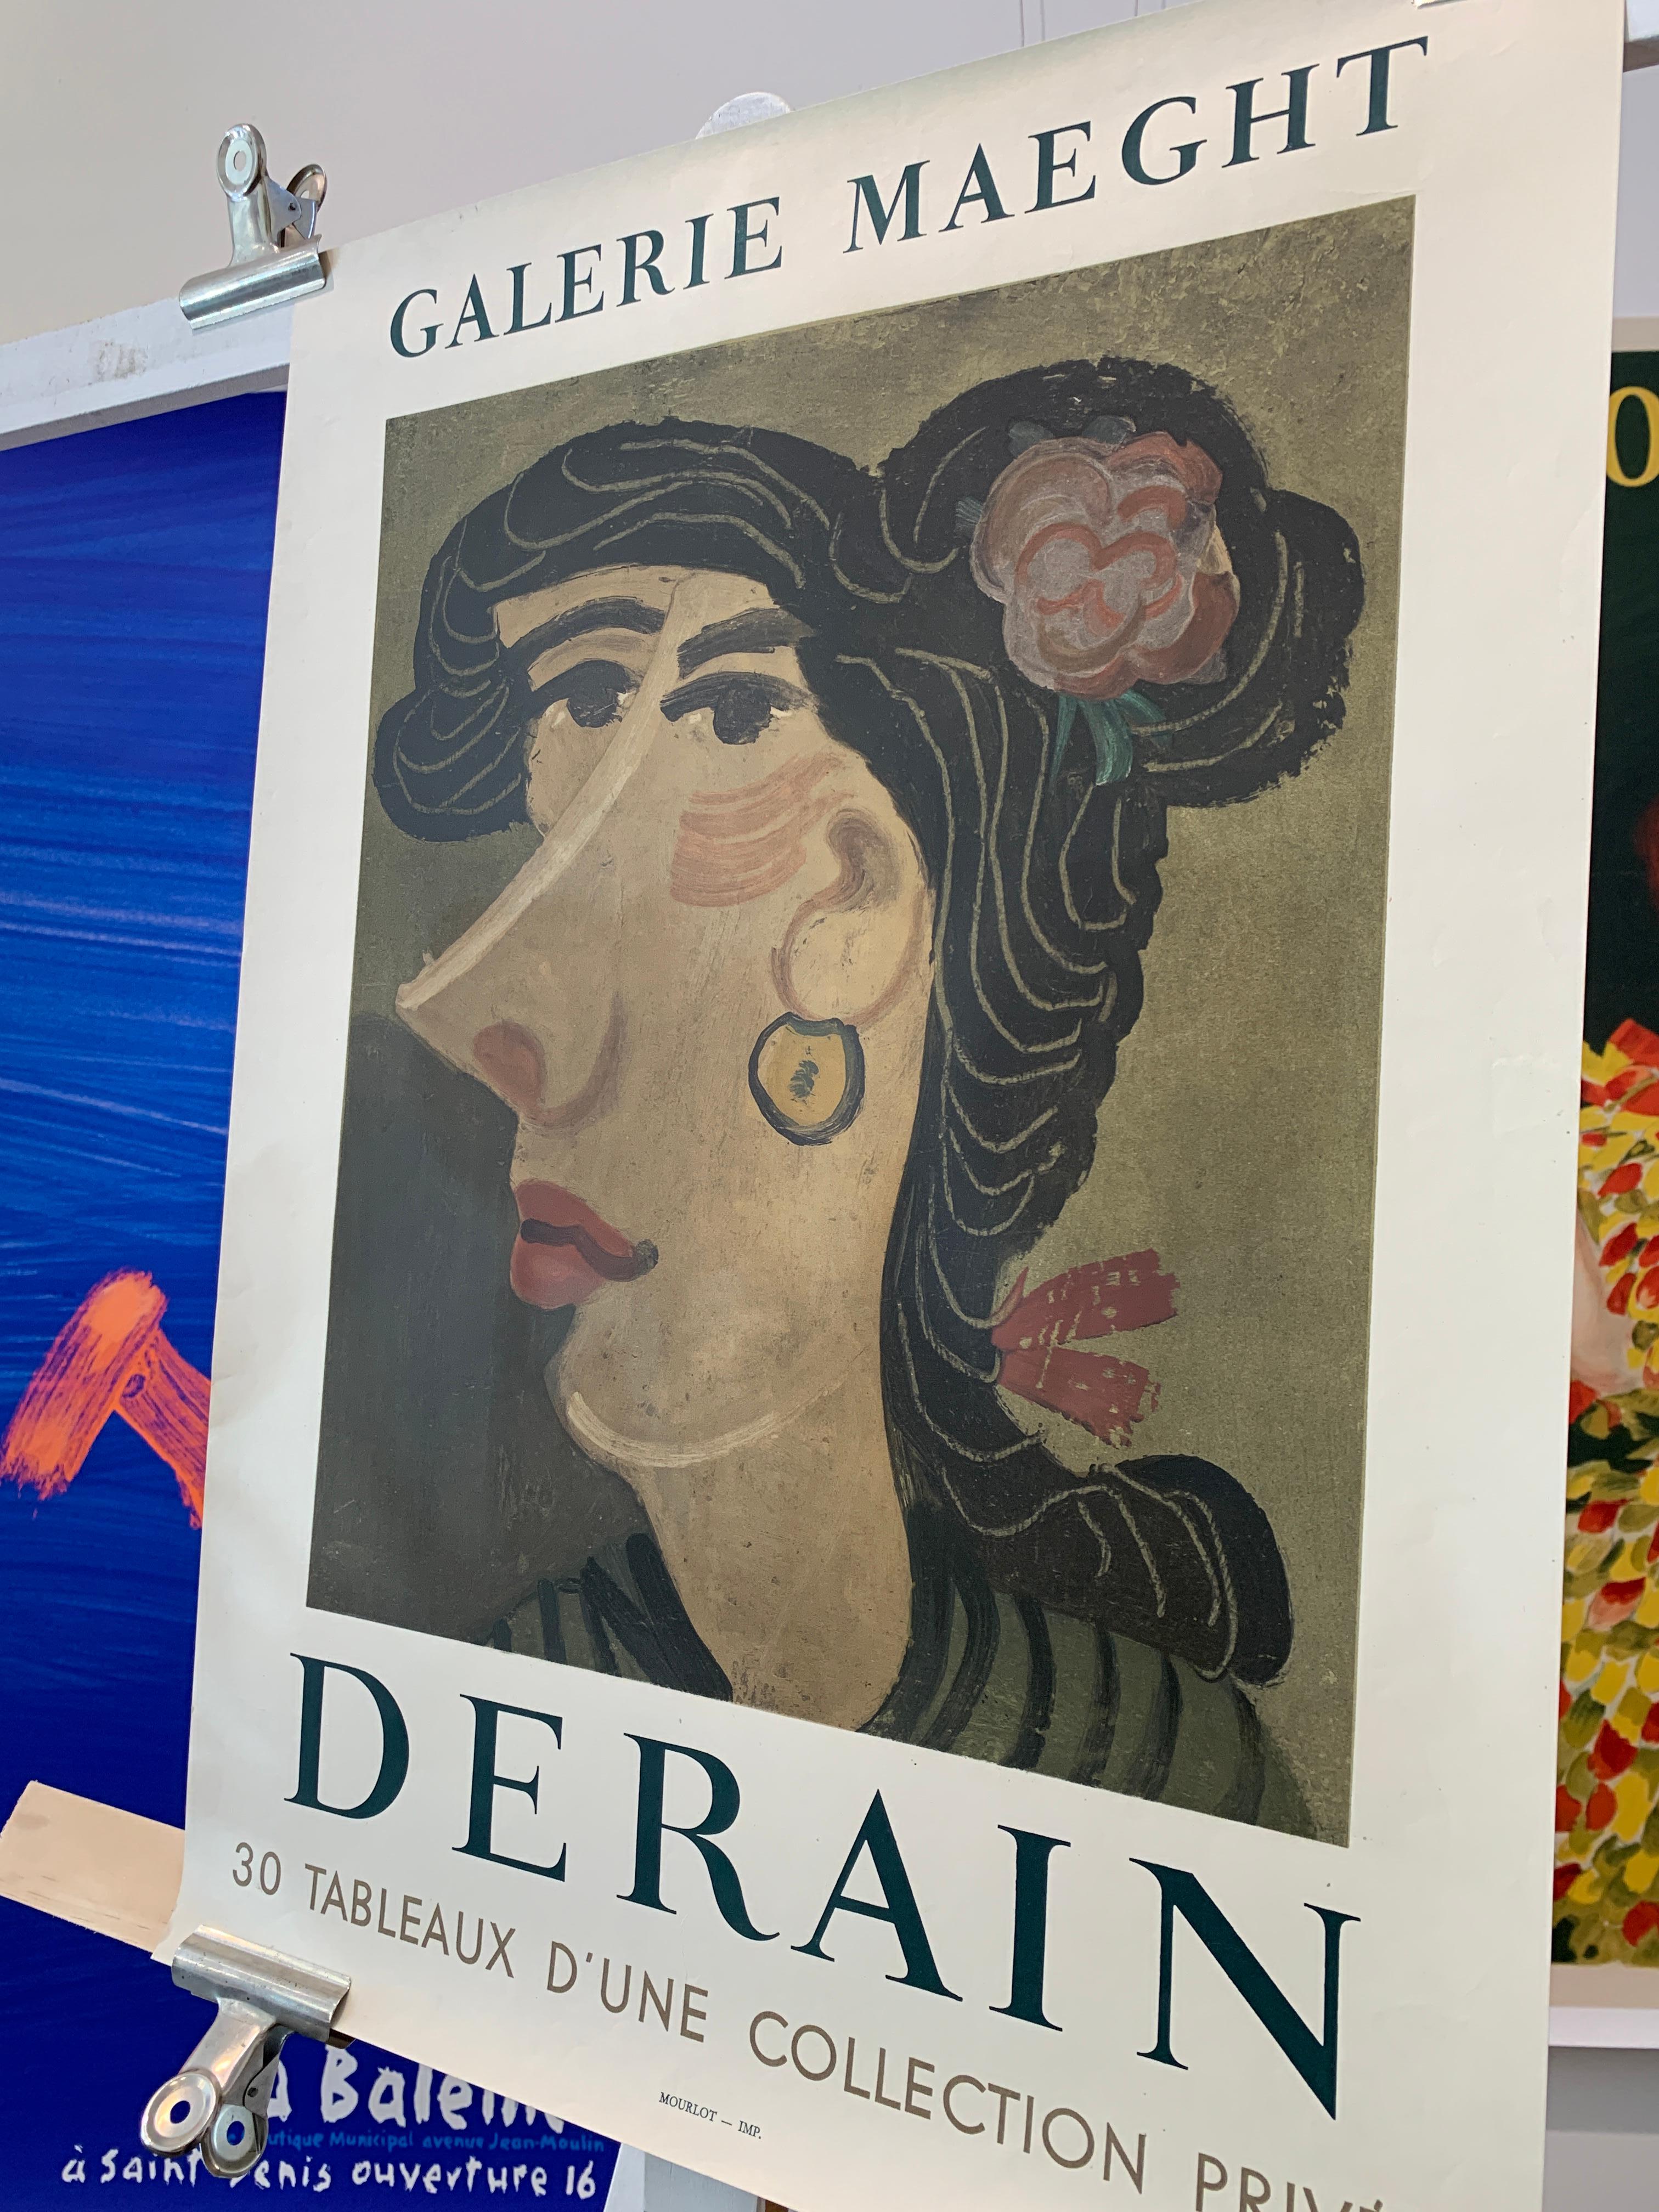 Paper 'Derain' Gaierie Maeght Original Vintage Poster  For Sale